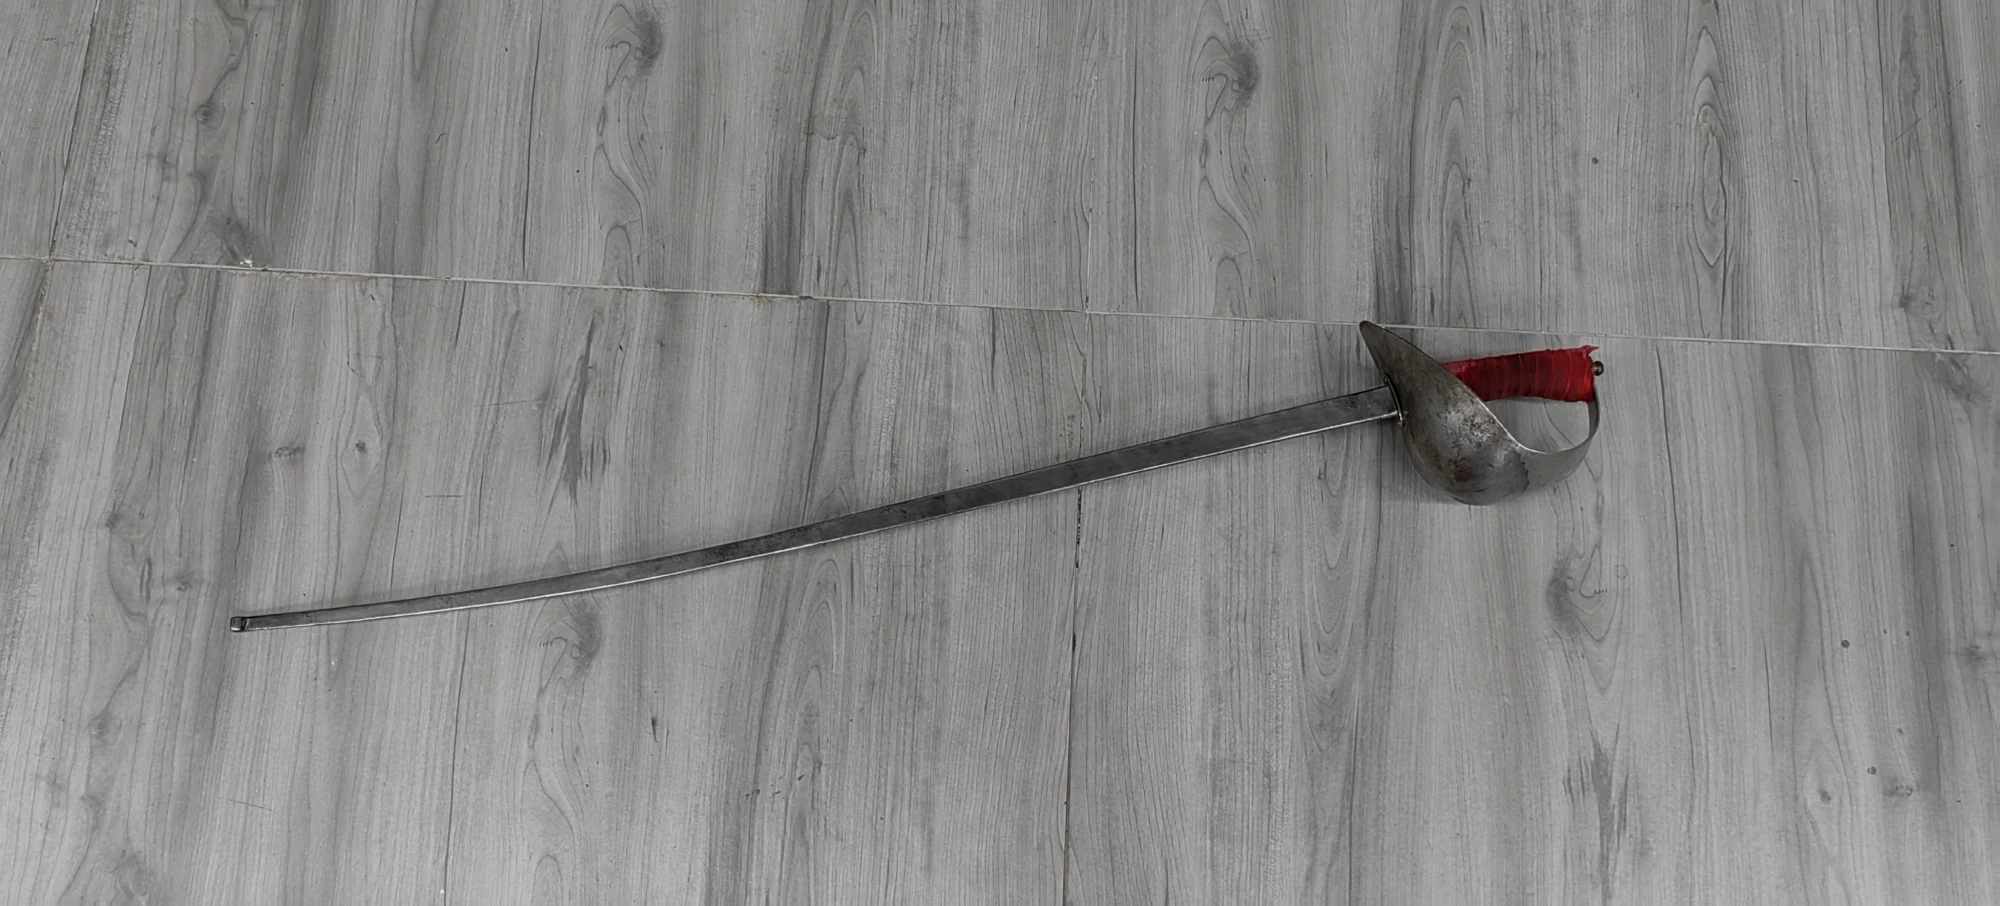 国产的百川江湖英式军刀，威力巨大，十分结实，适合熟练剑士的中高档军刀